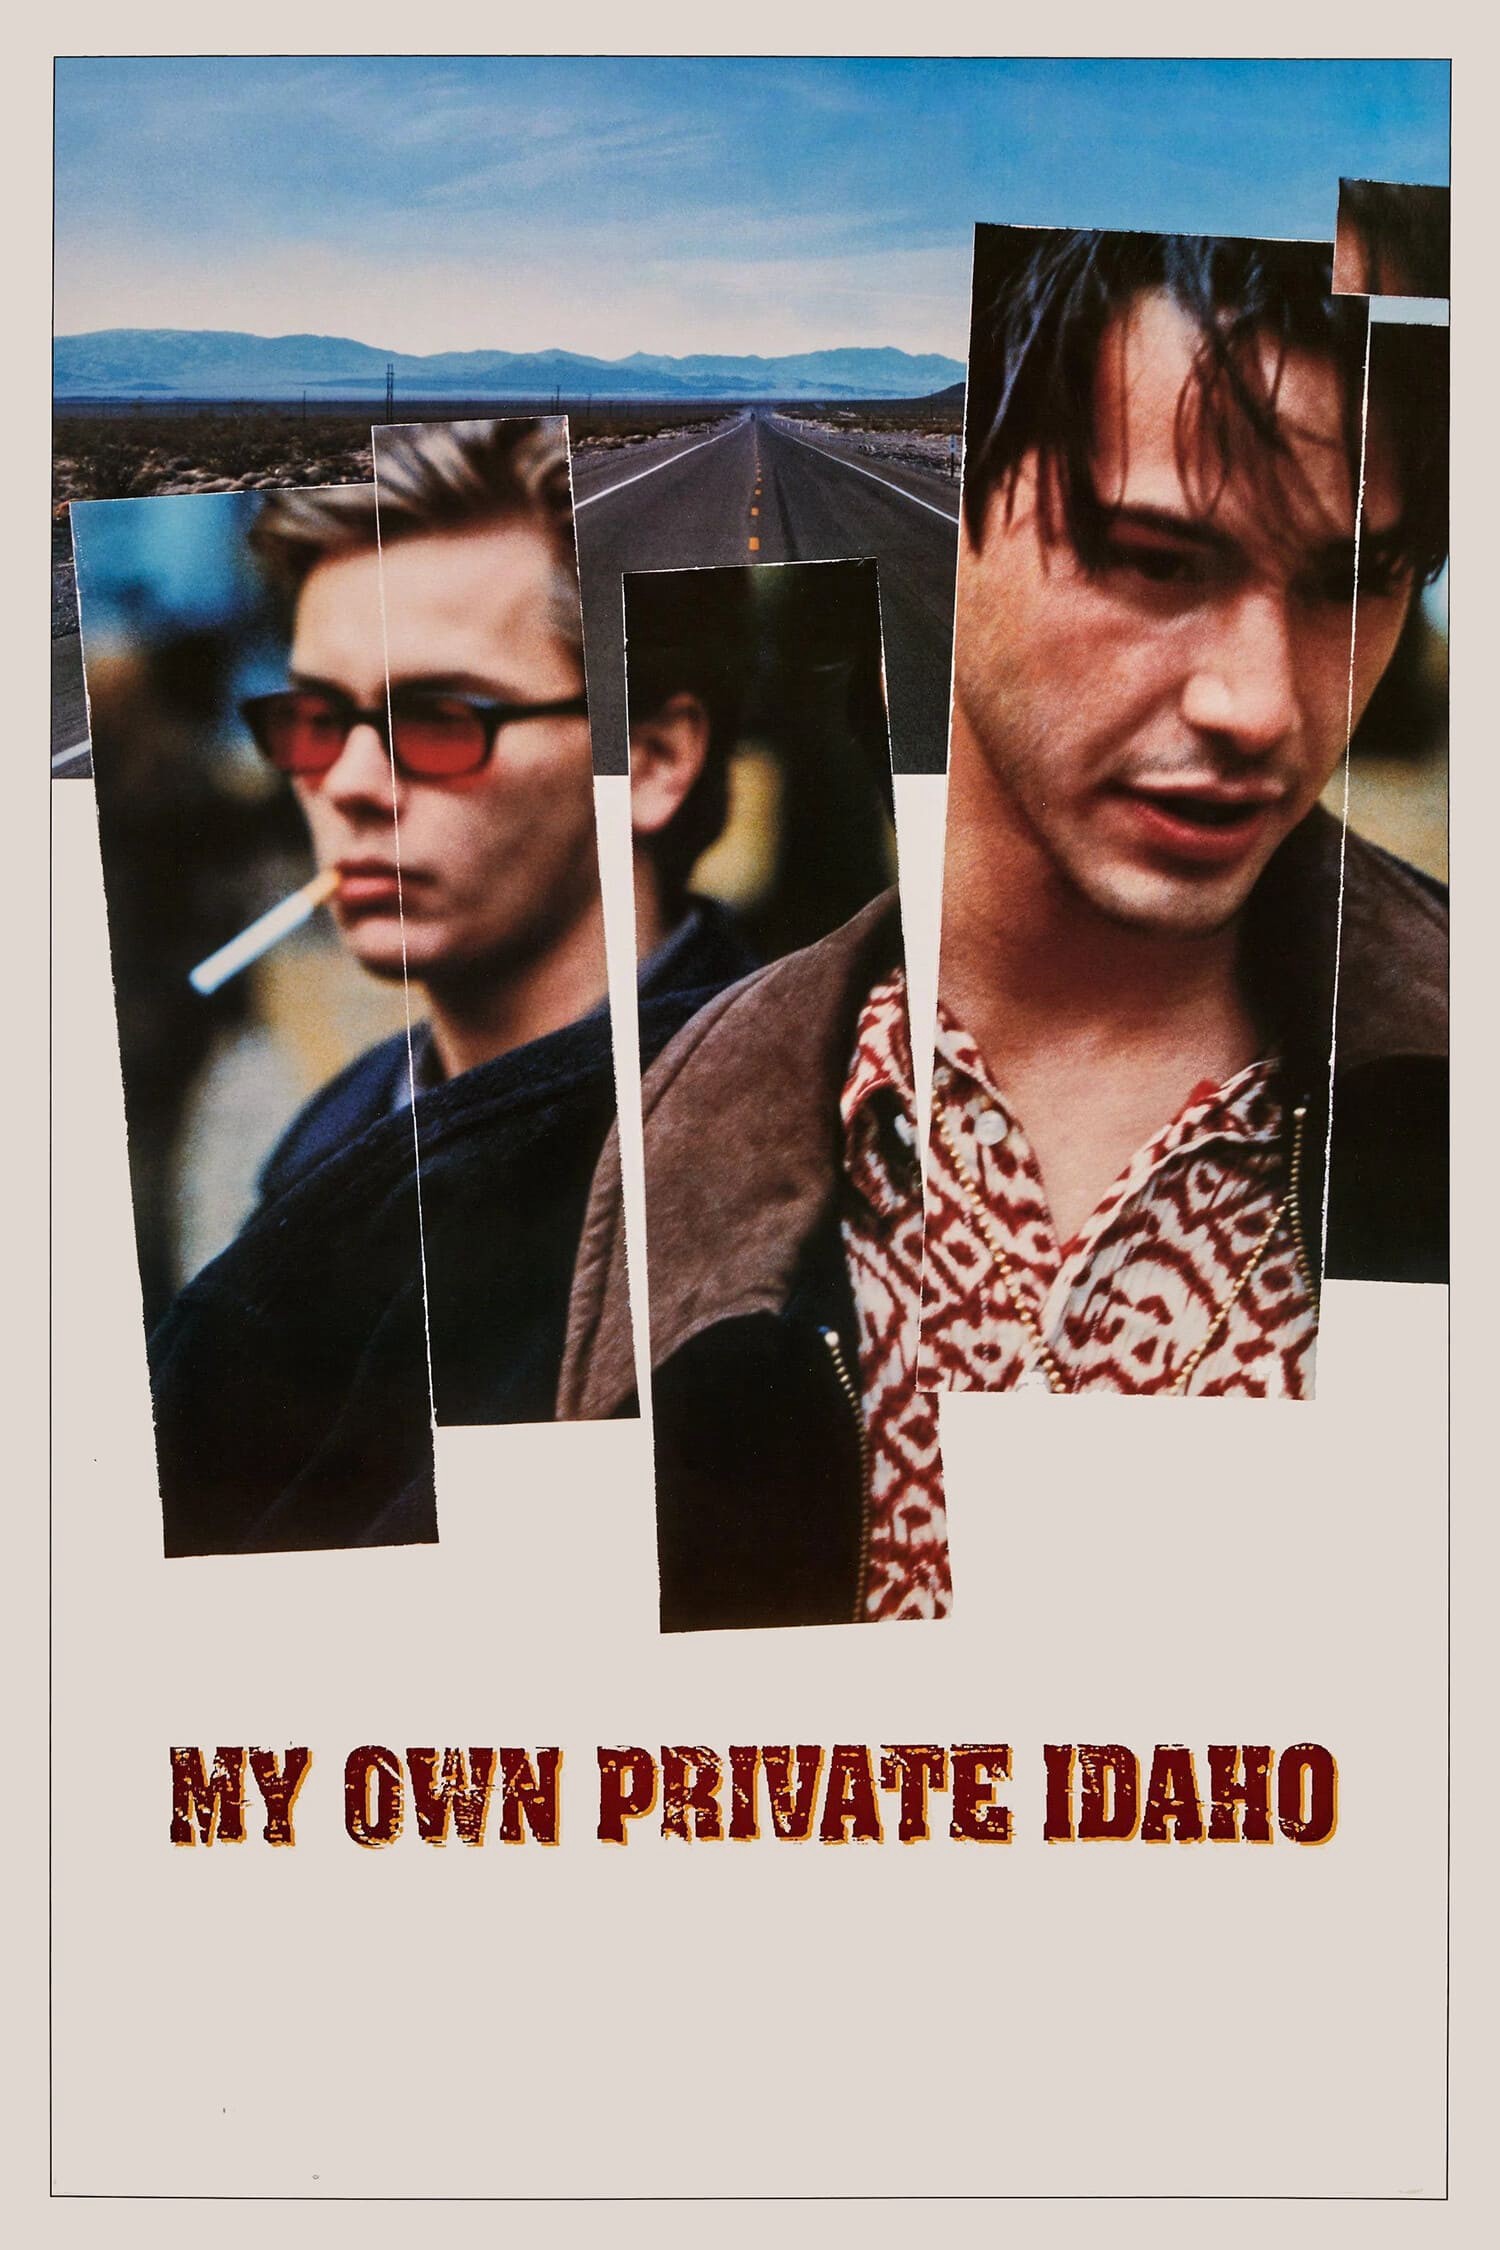 My Own Private Idaho - My Own Private Idaho (1991)